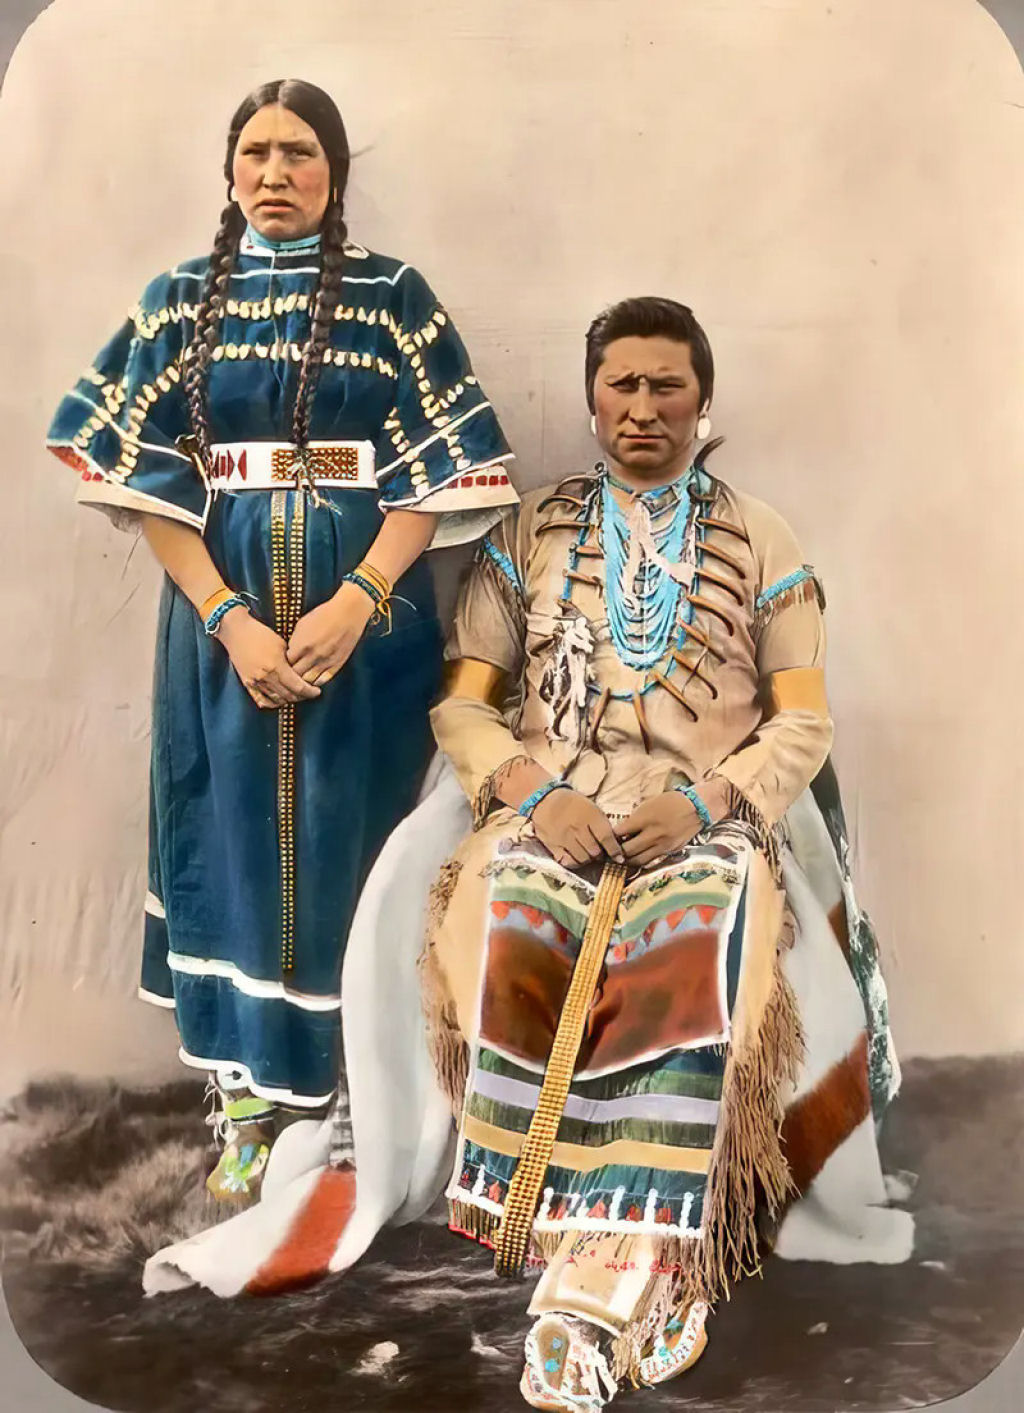 Impressionantes fotos históricas coloridas de nativos americanos do final do século 19 e início do século 20 11